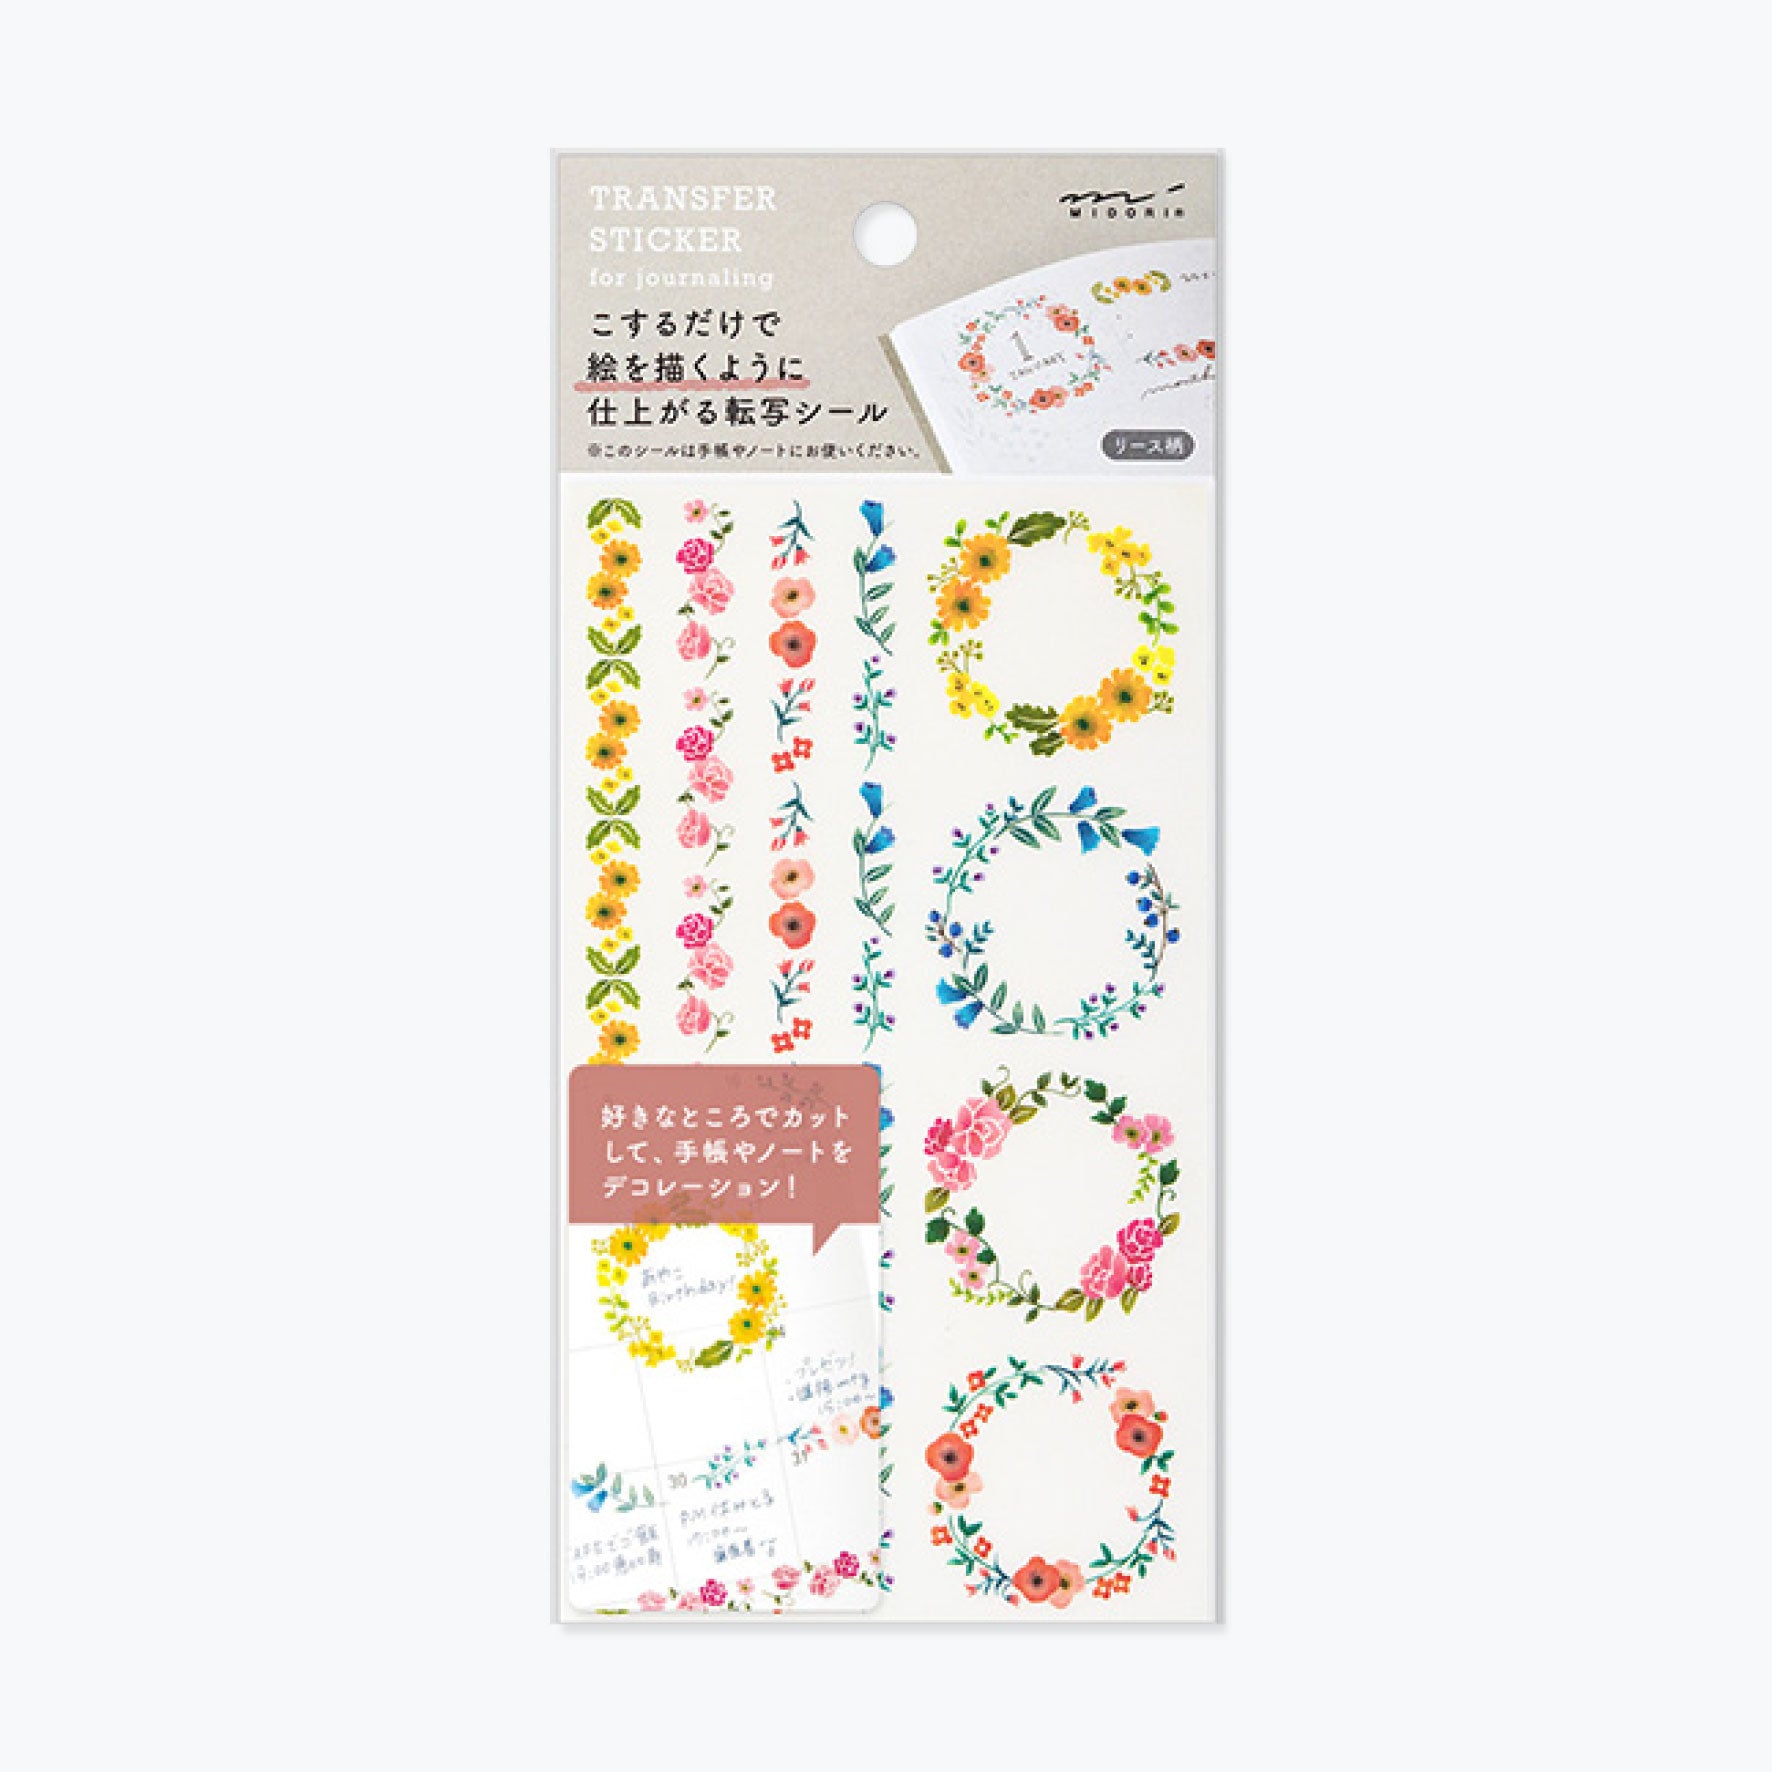 Midori - Sticker Seal - Transfer - Wreath